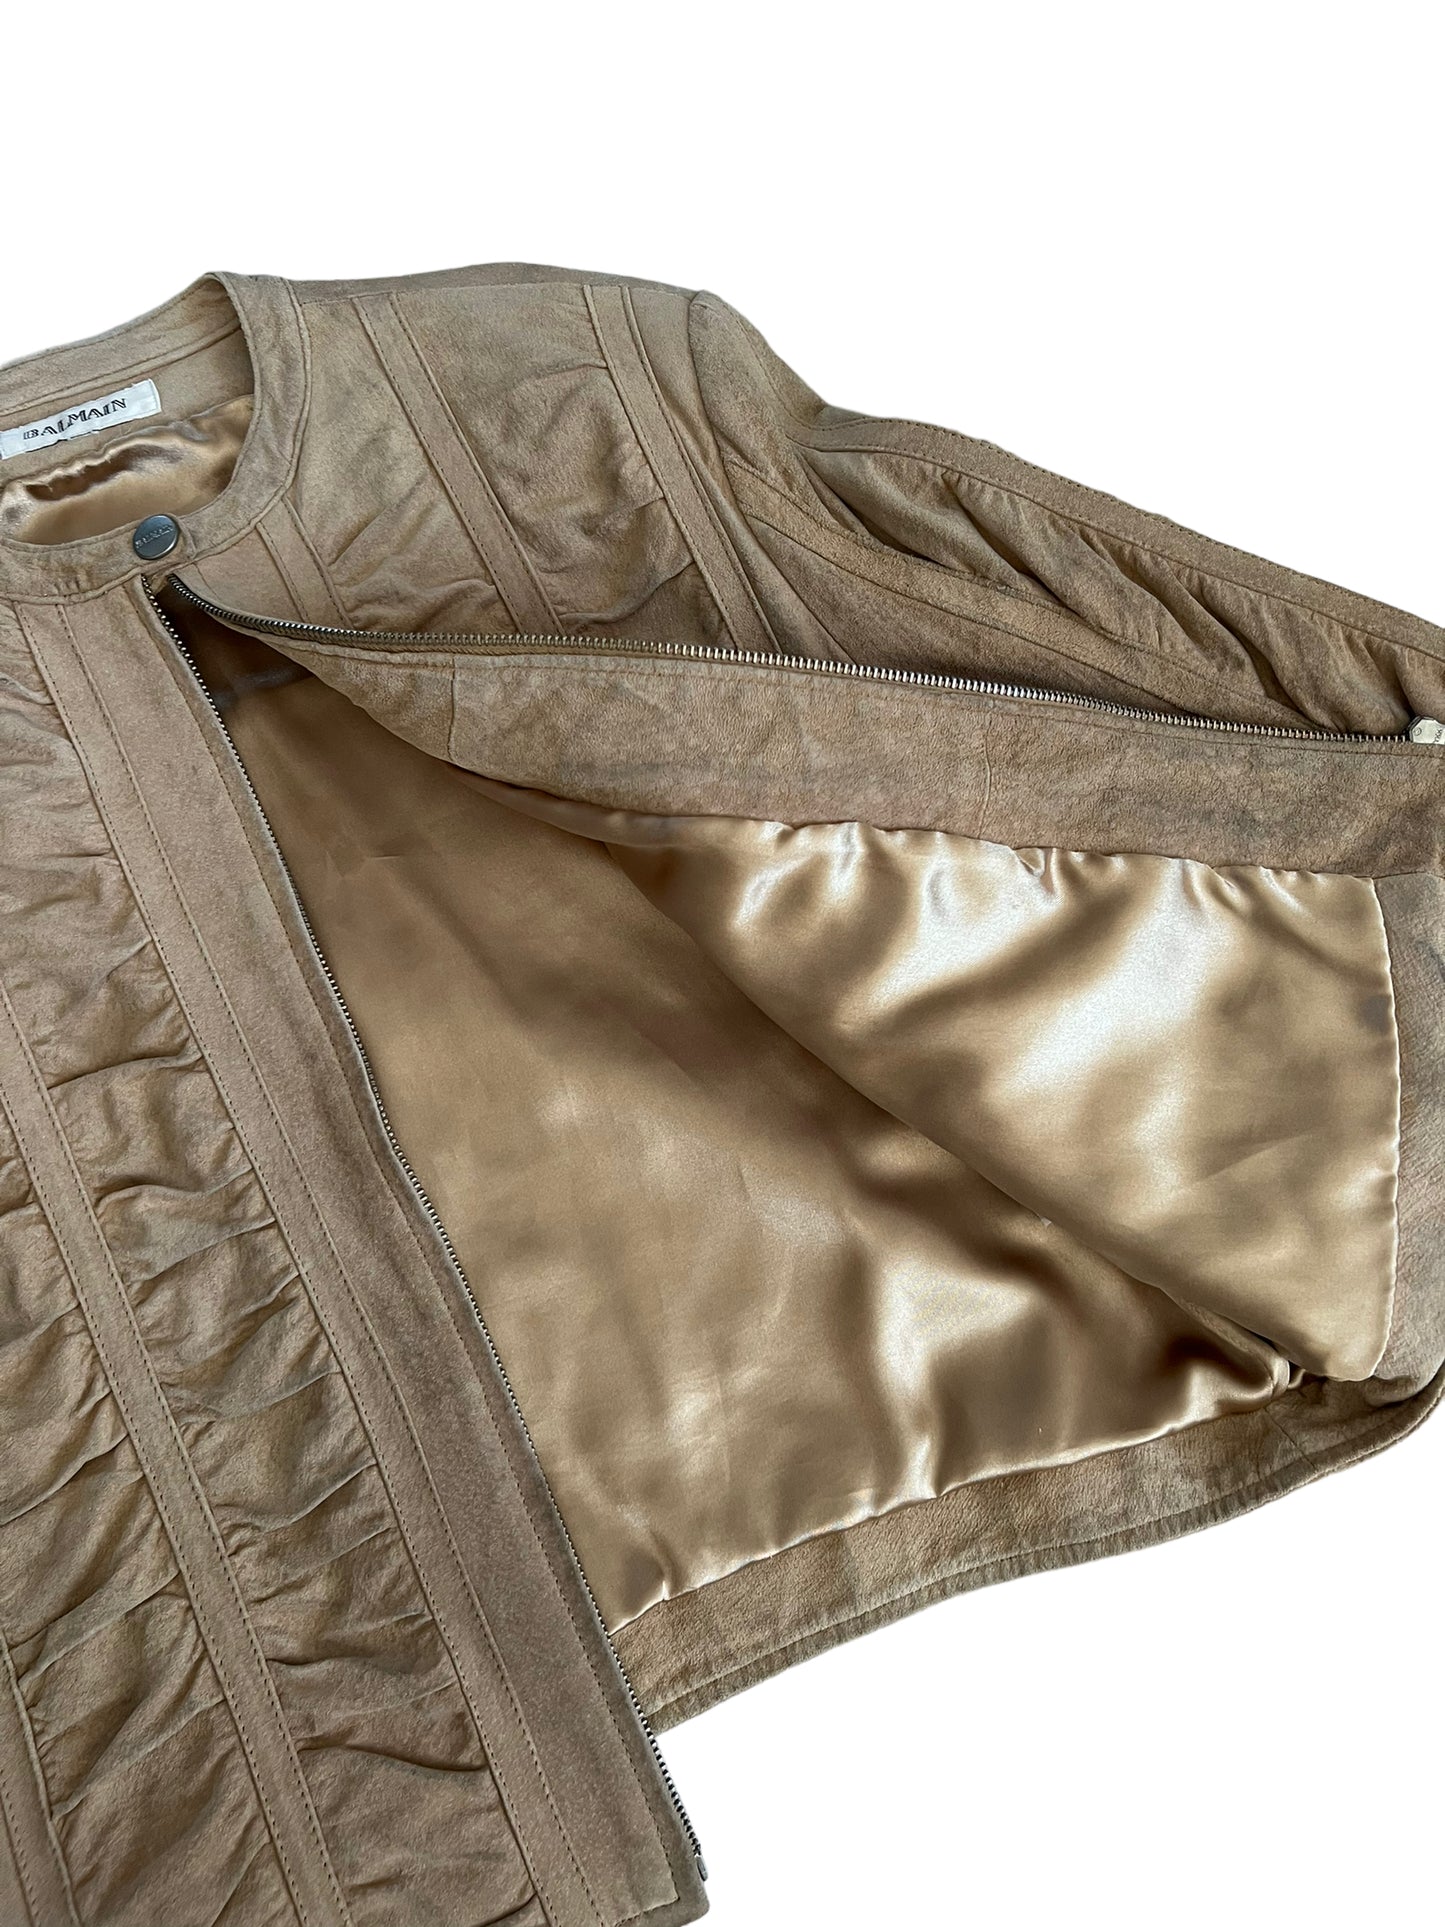 Veste cuir courte à zip « Balmain » vintage